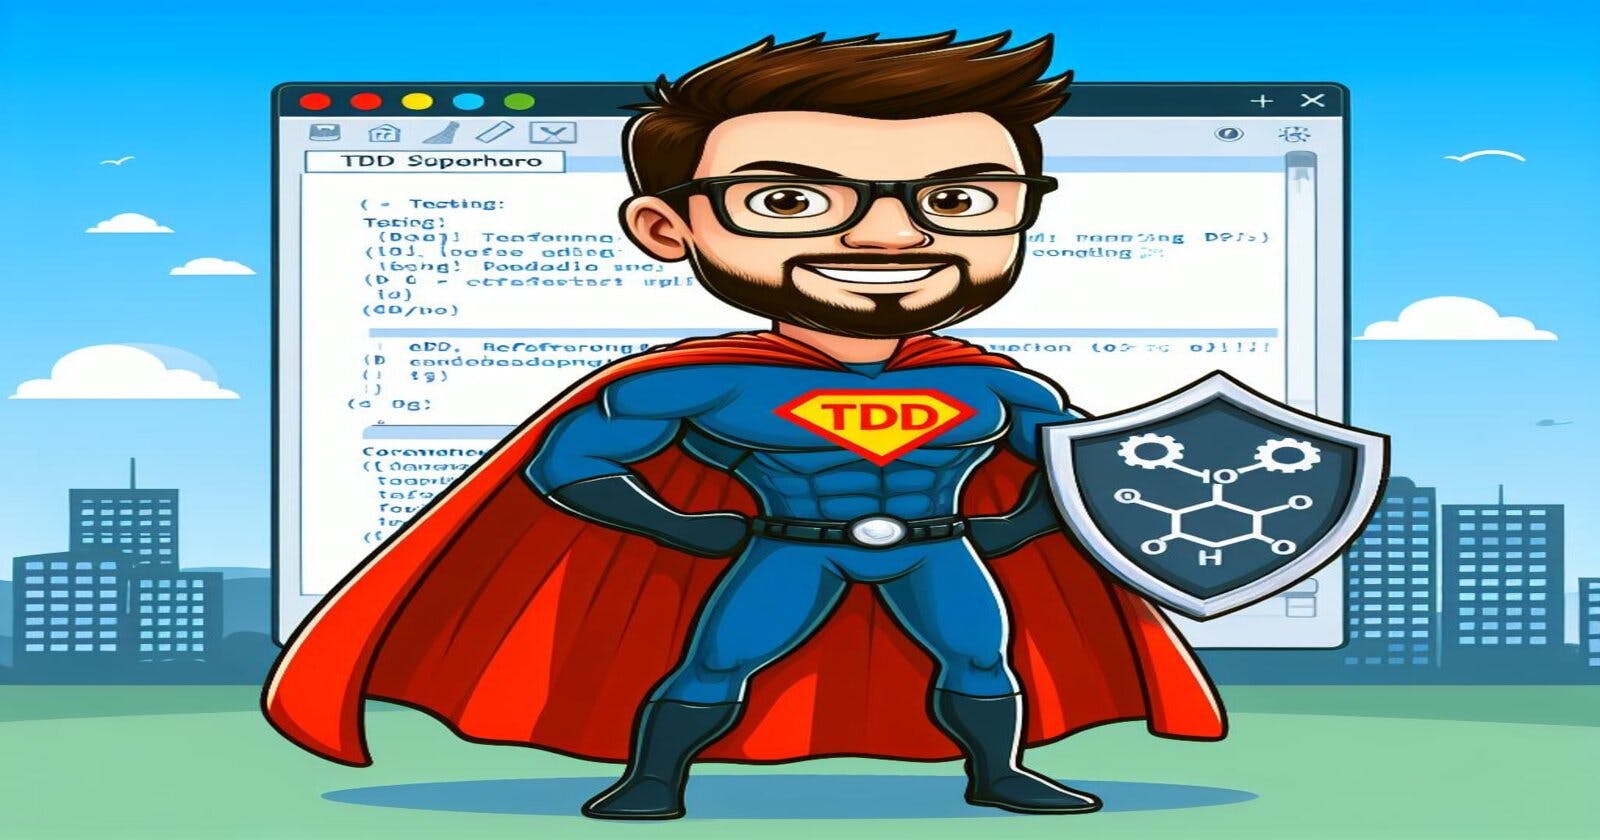 Introducción al TDD (Test-Driven Development)
Fundamentos y conceptos